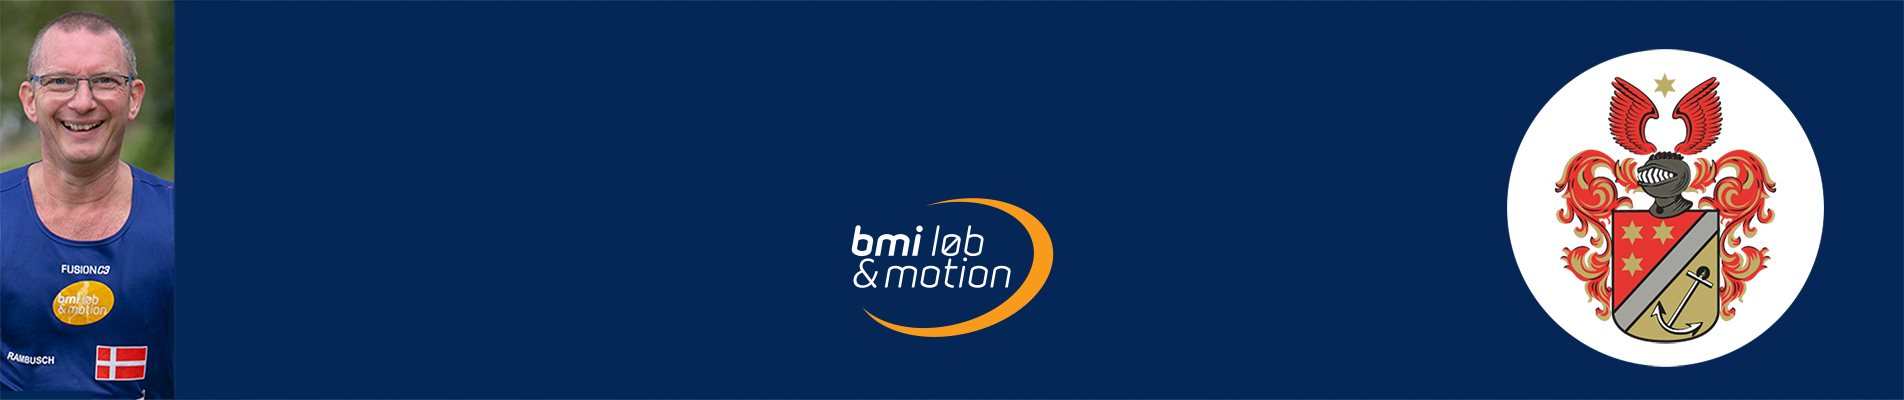 BMI Cannonball #4 - Rambusch #500